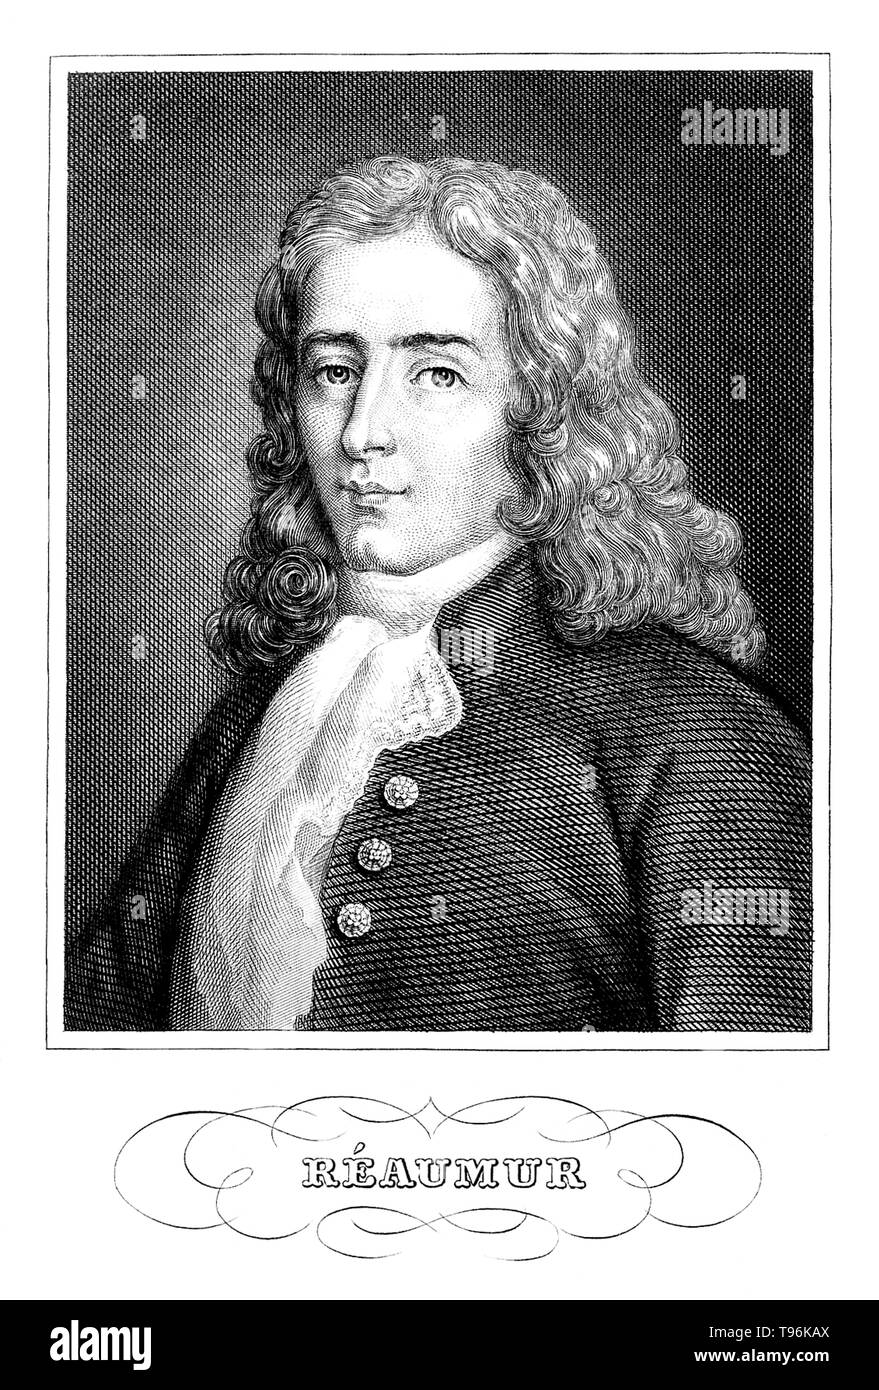 René Antoine Ferchault de Réaumur (Febbraio 28, 1683 - 17 ottobre 1757) è stato uno scienziato francese che hanno contribuito a molti campi diversi, soprattutto lo studio di insetti. Nel 1699 ha studiato diritto civile e matematica. Nel 1703 si recò a Parigi dove ha proseguito lo studio della matematica e della fisica, e nel 1708 è stato eletto, all'età di 24, un membro della Académie des Sciences. Nel 1731 divenne interessati in meteorologia, e inventato il termometro scala che porta il suo nome: Réaumur. Foto Stock